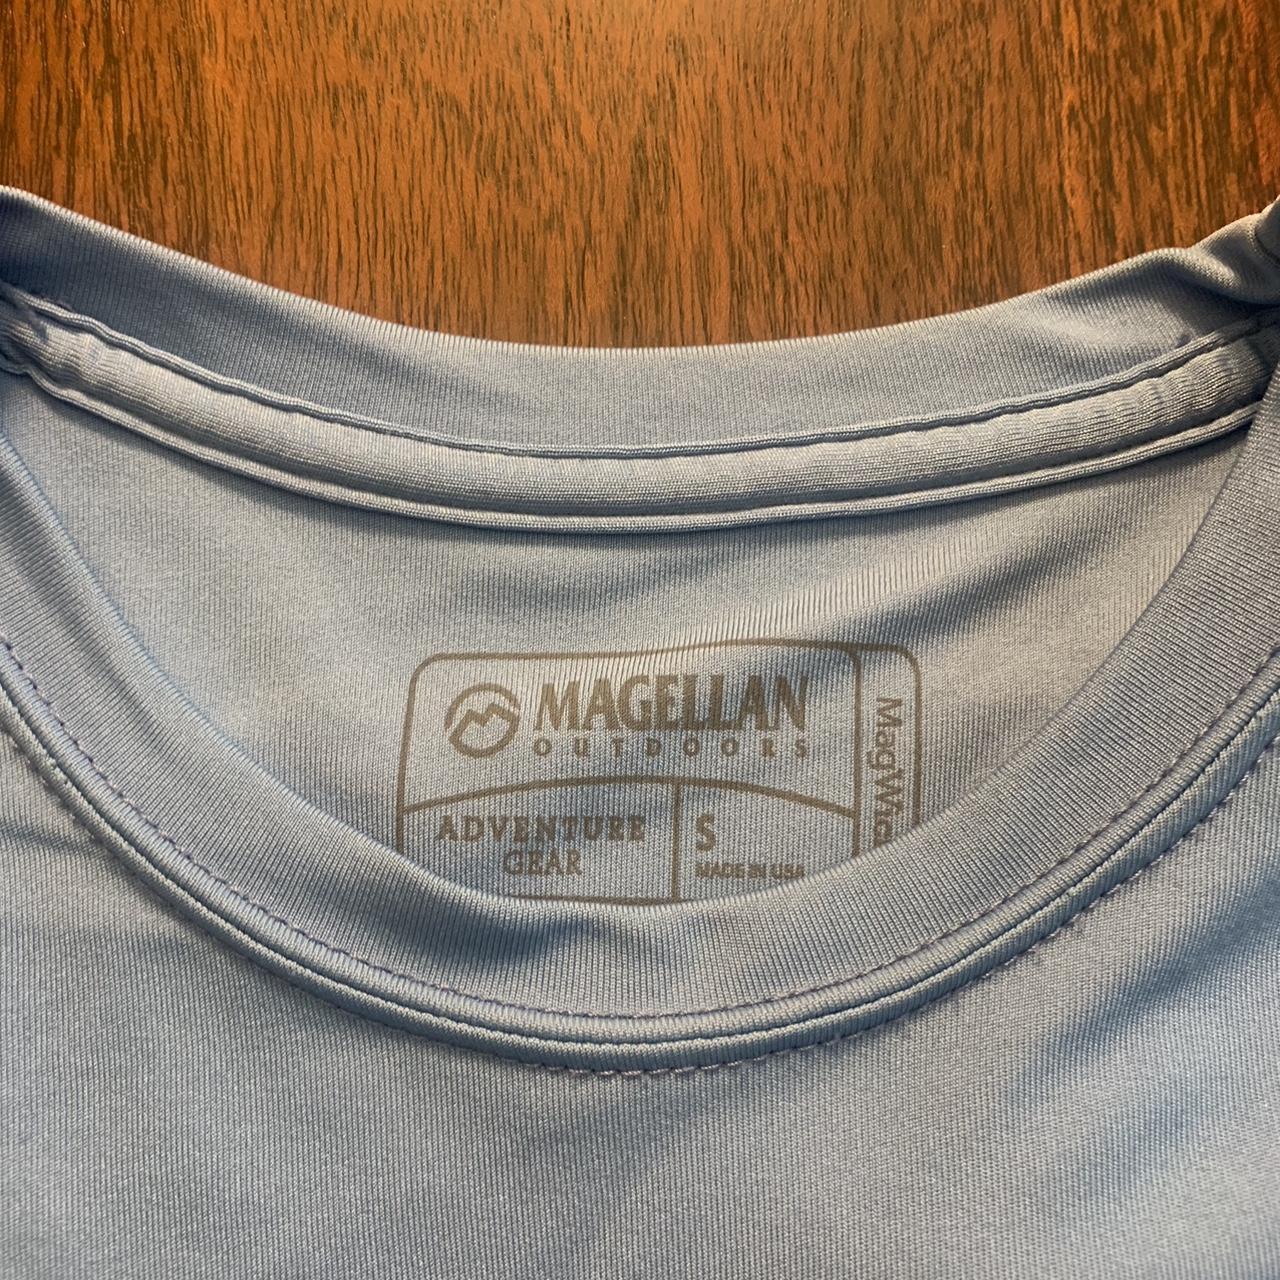 Magellan DriFit Shirt - Men's Small/Women's Medium. - Depop